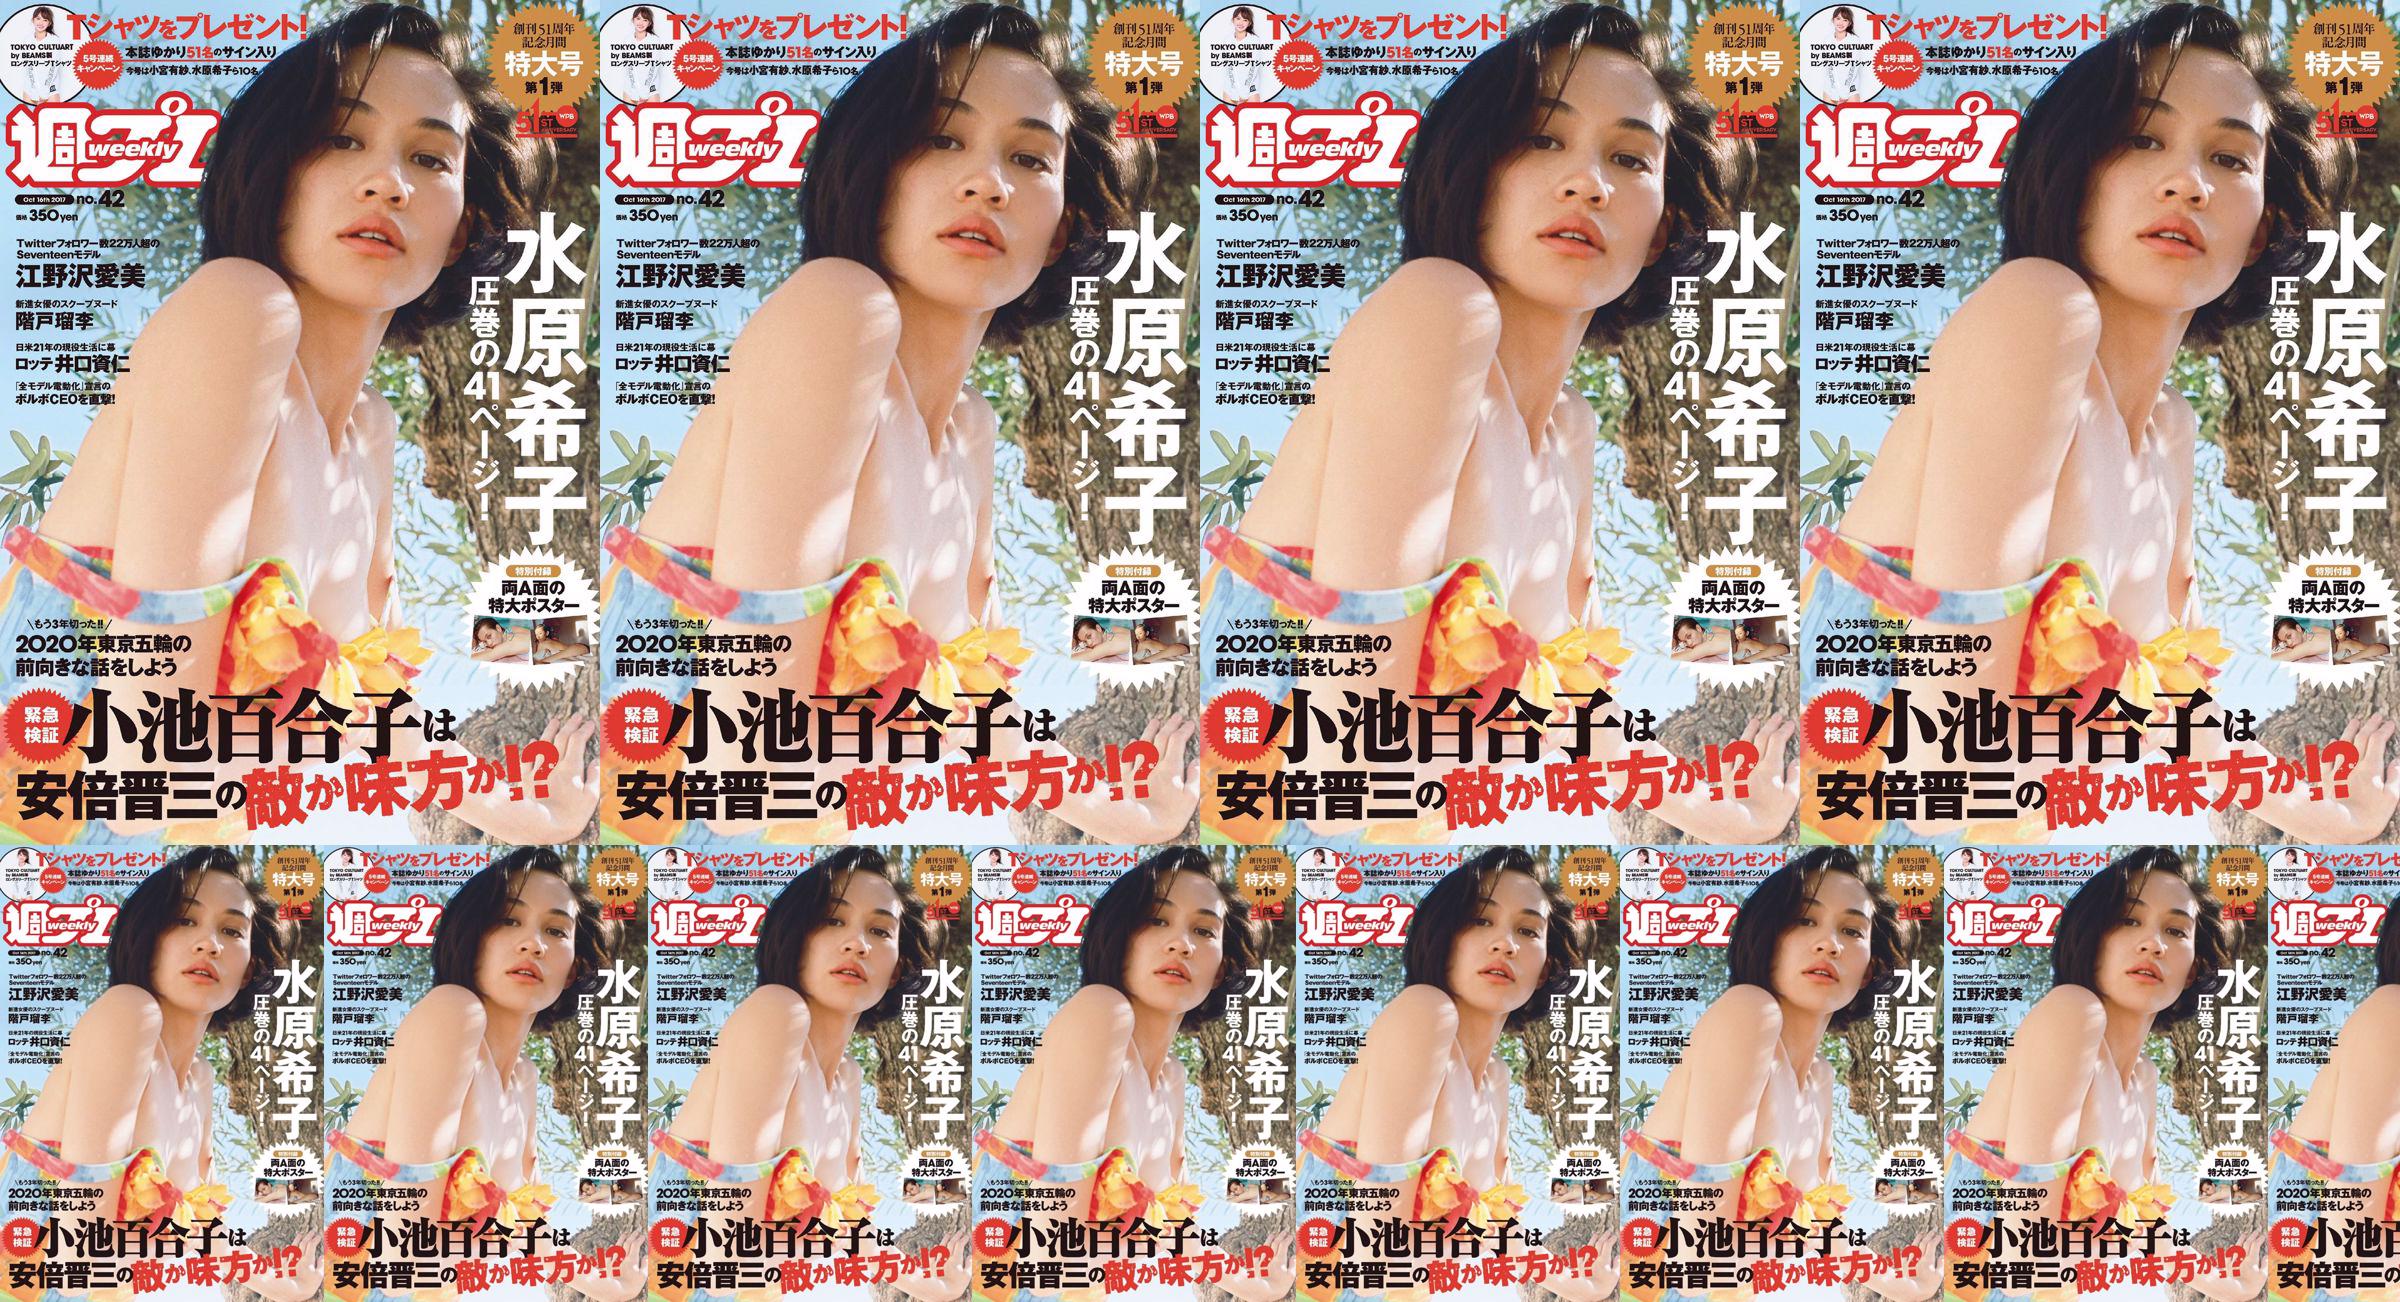 Kiko Mizuhara Manami Enosawa Serina Fukui Miu Nakamura Ruri Shinato [Weekly Playboy] 2017 No.42 Photo Magazine No.8ce238 หน้า 5